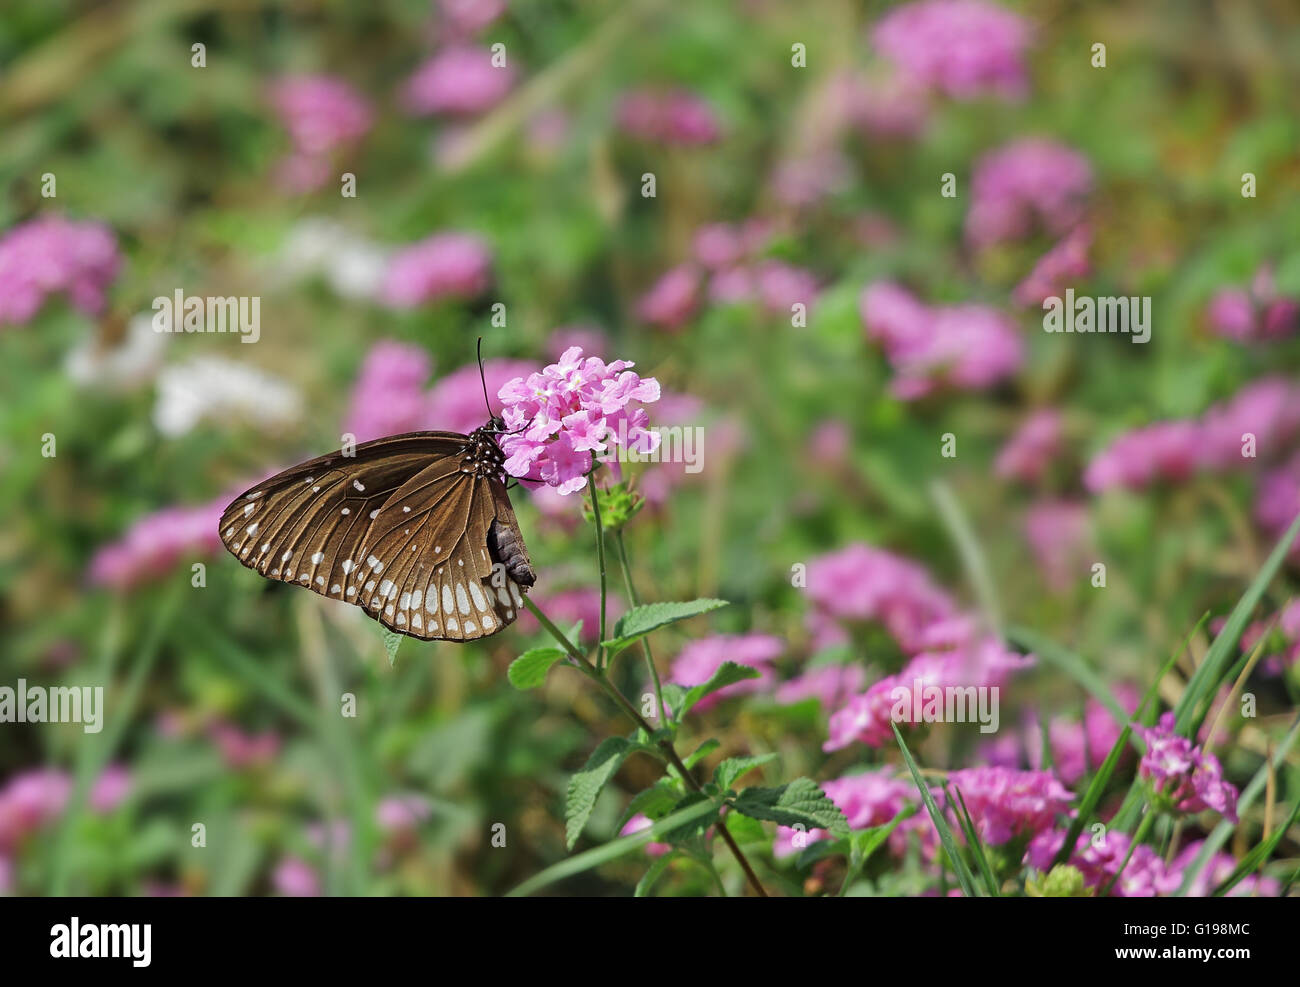 Gemeinsamen Krähe Schmetterling, Euploea Core, Fütterung auf rosa Blüten. Dunkel Brauner Schmetterling mit weißen Flecken am Körper und Flügel. Stockfoto